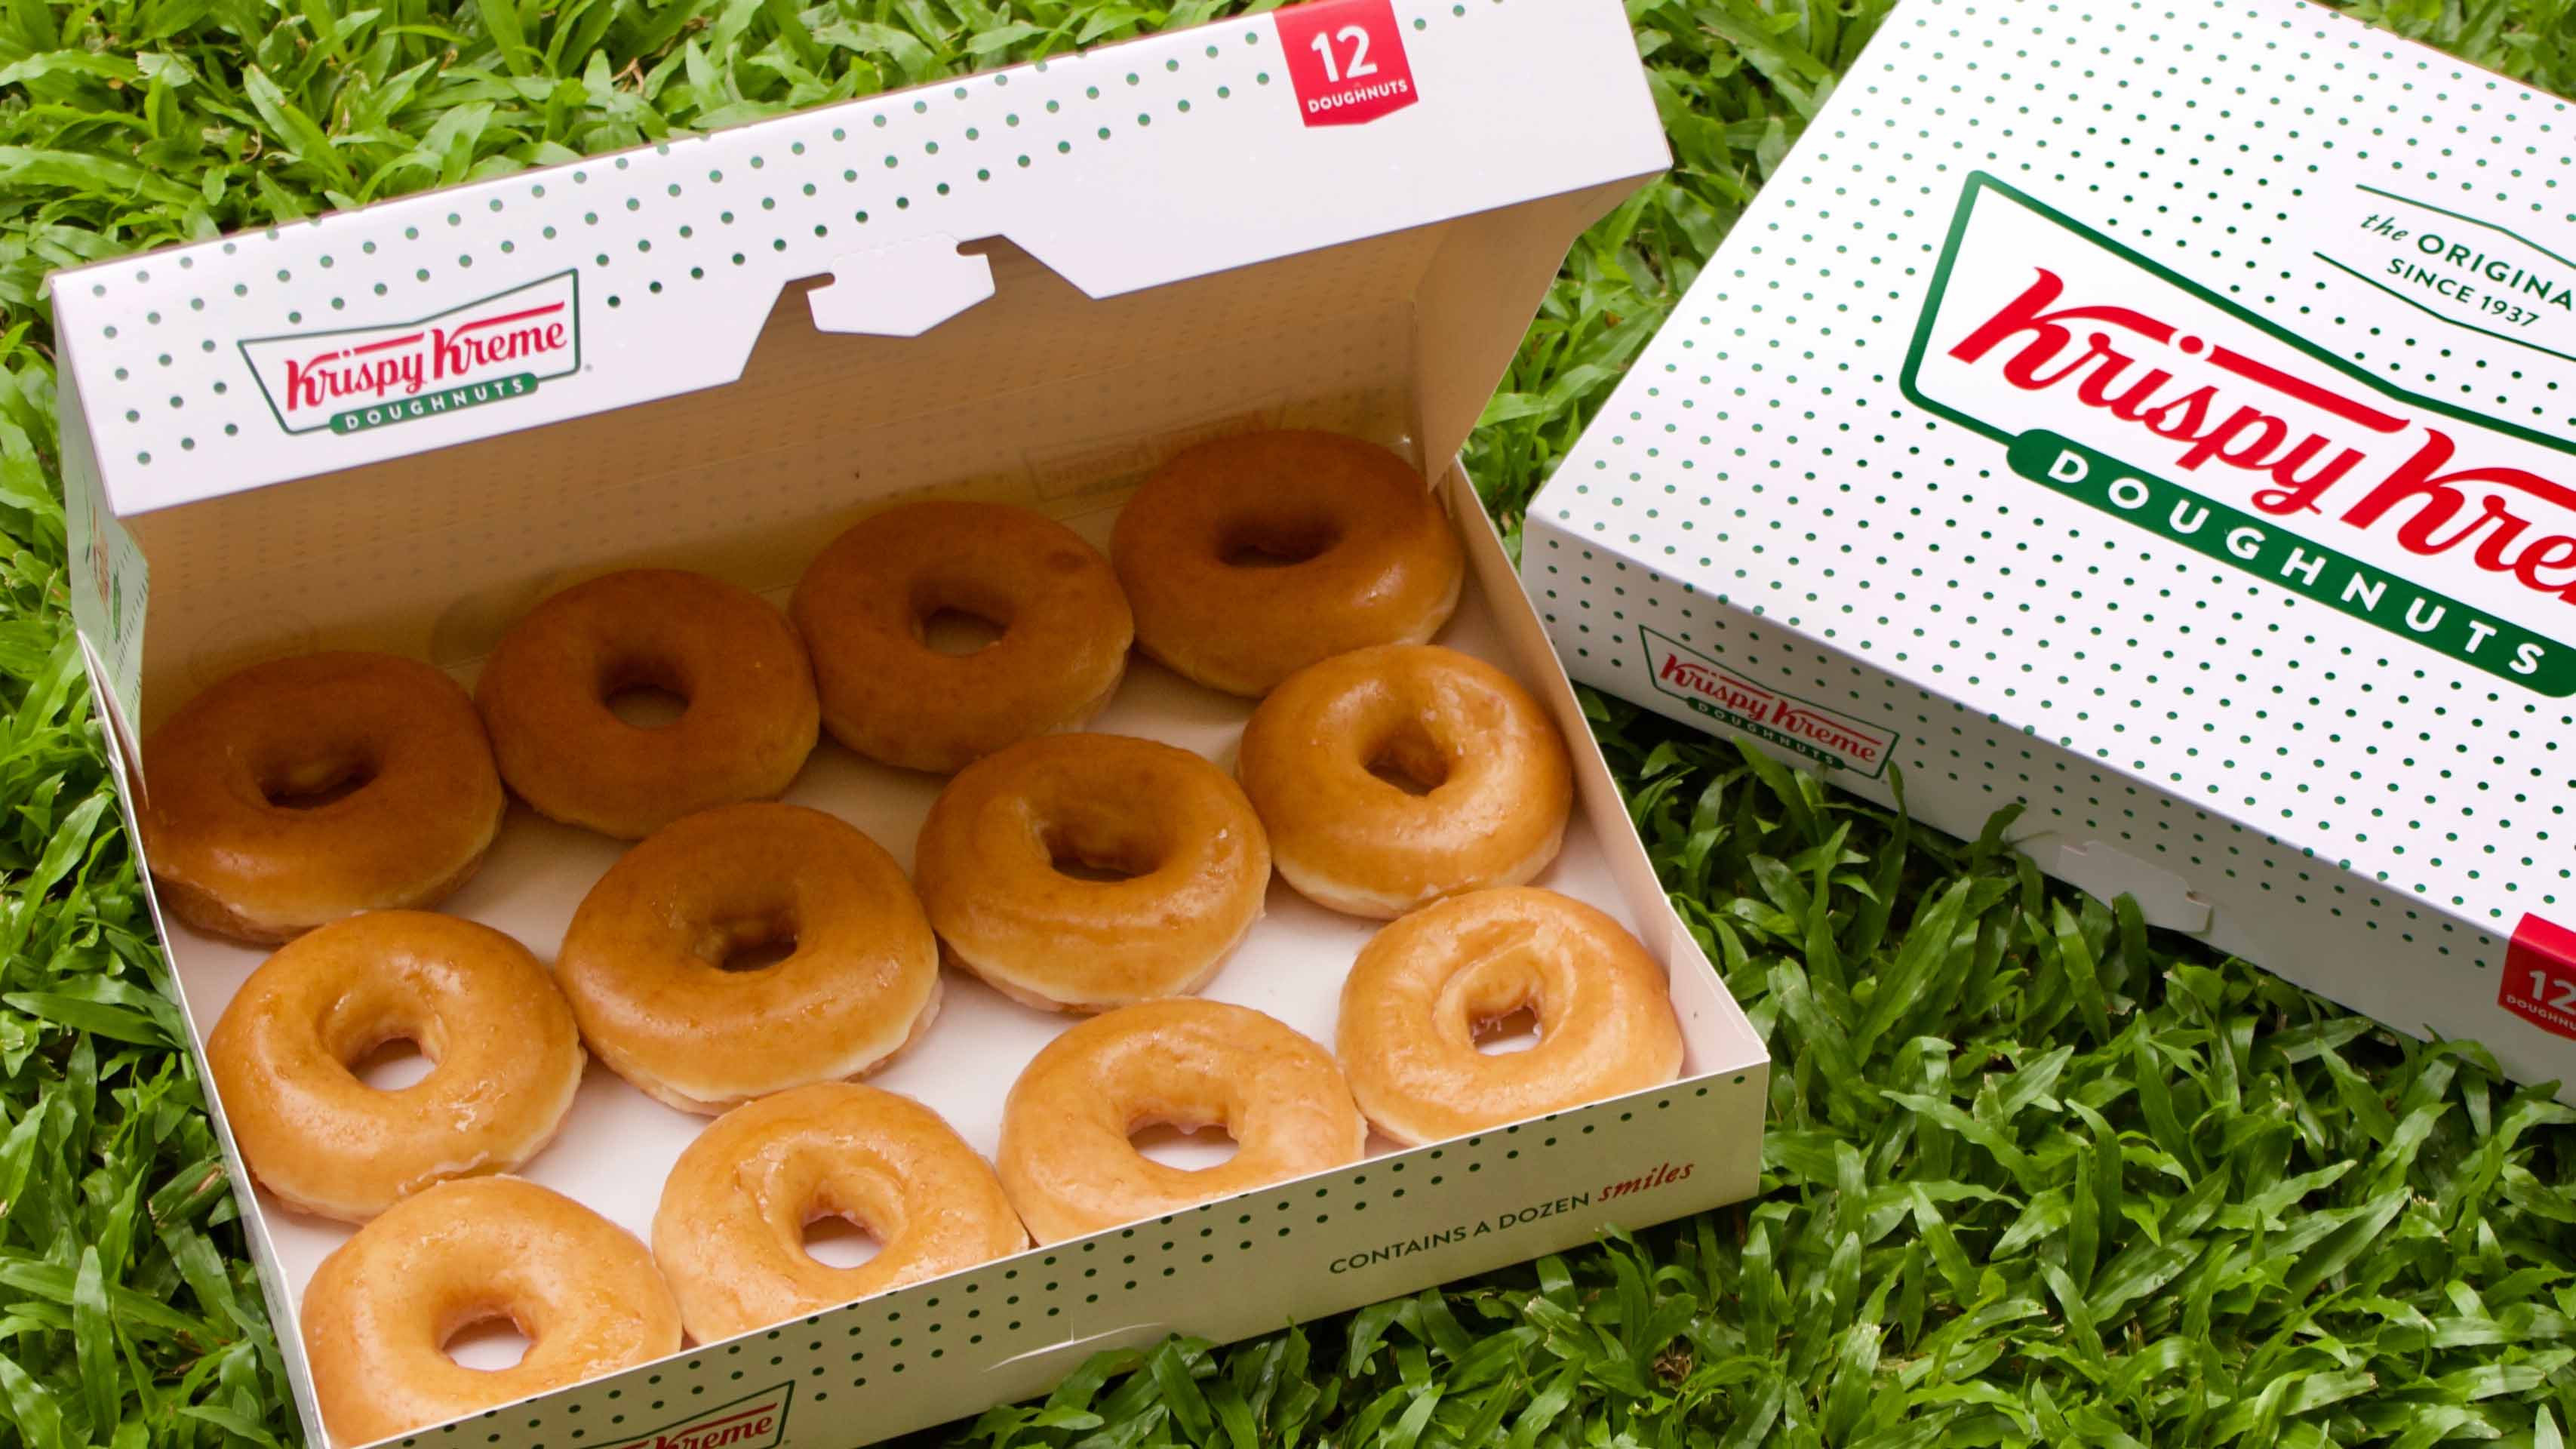 Vuelve la oferta de Krispy Kreme: 12 donas al precio del galón de gasolina